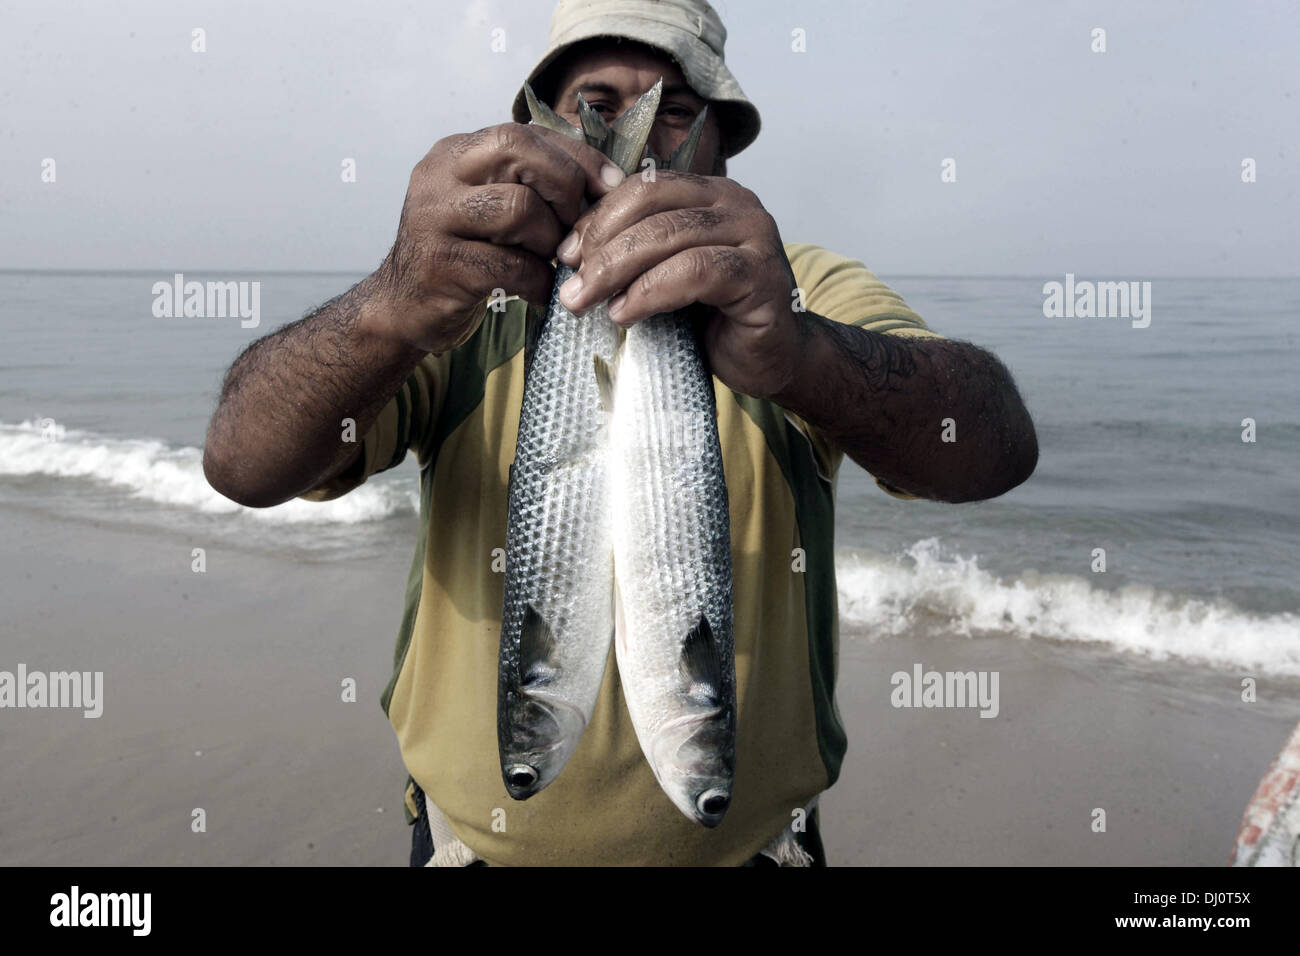 18. November 2013 - Gaza-Stadt, Gazastreifen, Palästina - zeigt ein palästinensischen Fischer Fische nach einem Angelausflug am Strand von Gaza-Stadt, am 18. November 2013. Israel beschränkt die Fischereizone auf drei Seemeilen nach der Entführung des israelischen Soldaten Gilad Shalit im Jahr 2007. Die Oslo-Abkommen 1993 mit der palästinensischen Autonomiebehörde unterzeichneten besagen, dass Gaza s Fischereizone auf 20 Seemeilen auszudehnen. Die Zone wurde dann erweitert auf sechs Seemeilen als Bestandteil der ägyptischen vermittelten Waffenstillstand im November 2012, aber Israel zeitweise auf drei Seemeilen reduzieren Stockfoto